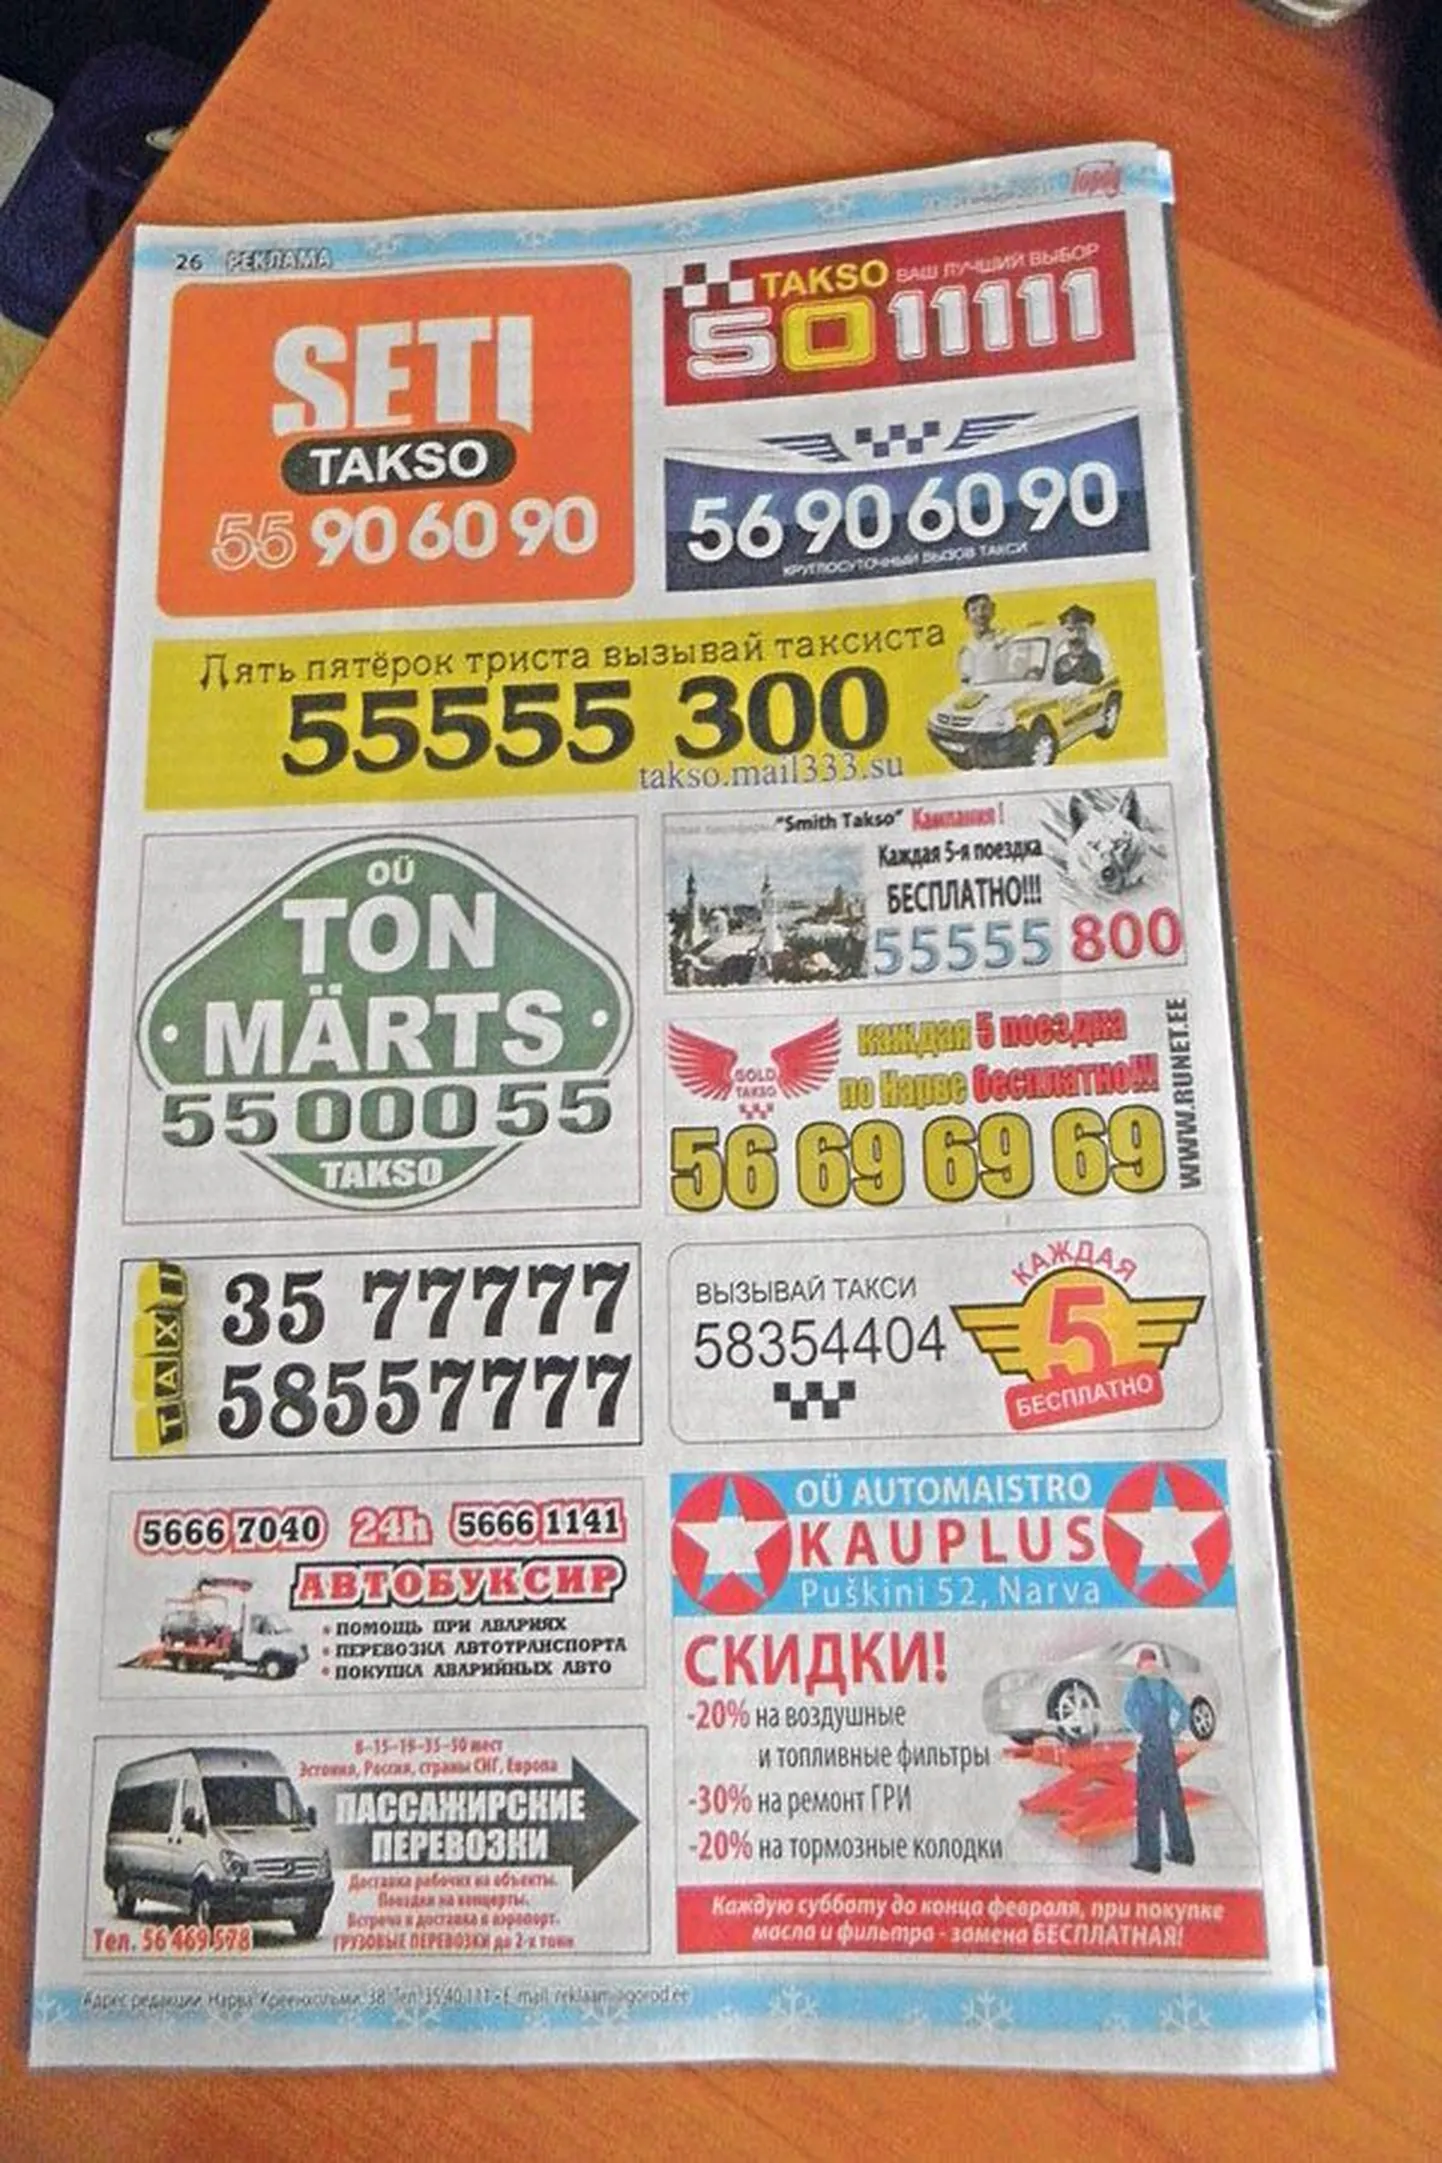 Вызвав такси по номерам телефонов, указанных в городской бесплатной газете, можно доехать за два евро в любой конец Нарвы.